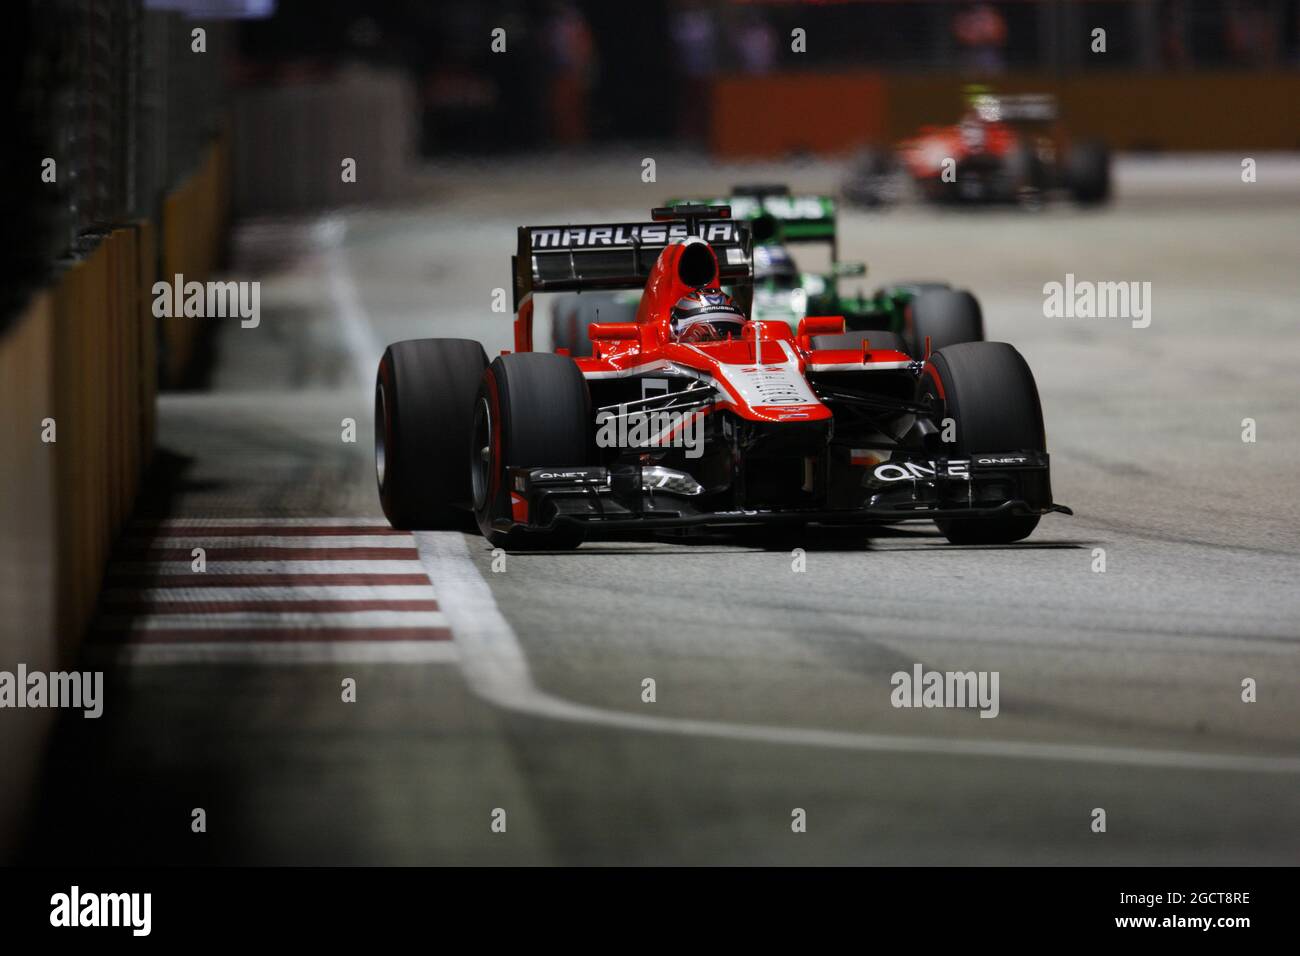 Jules Bianchi (fra) Marussia F1 Team MR02. Gran Premio di Singapore, domenica 22 settembre 2013. Circuito Marina Bay Street, Singapore. Foto Stock